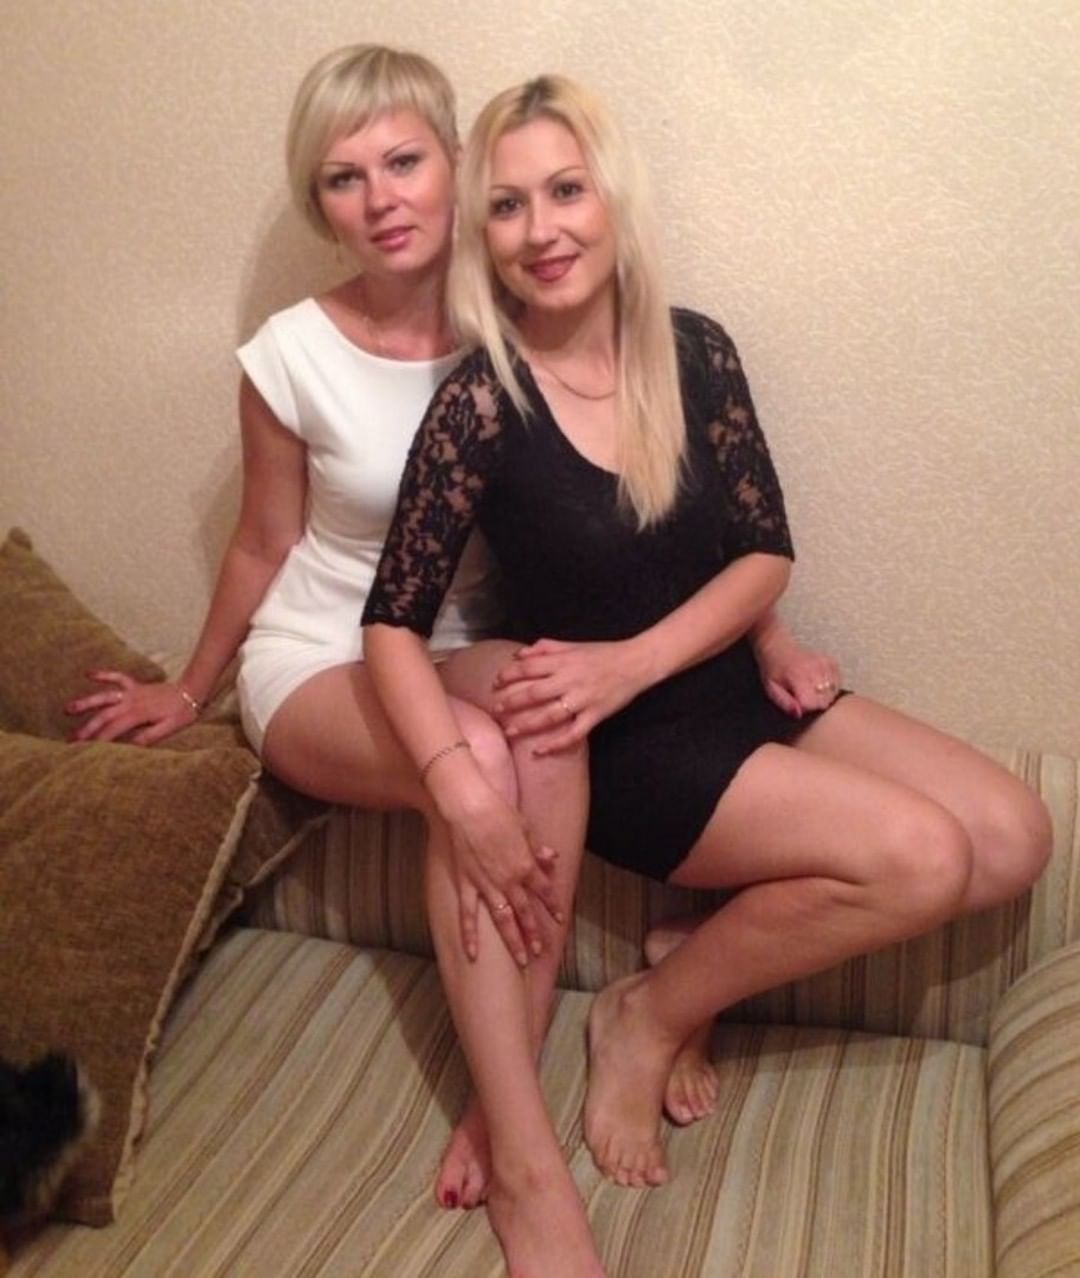 Проститутки Балашиха Город Москва